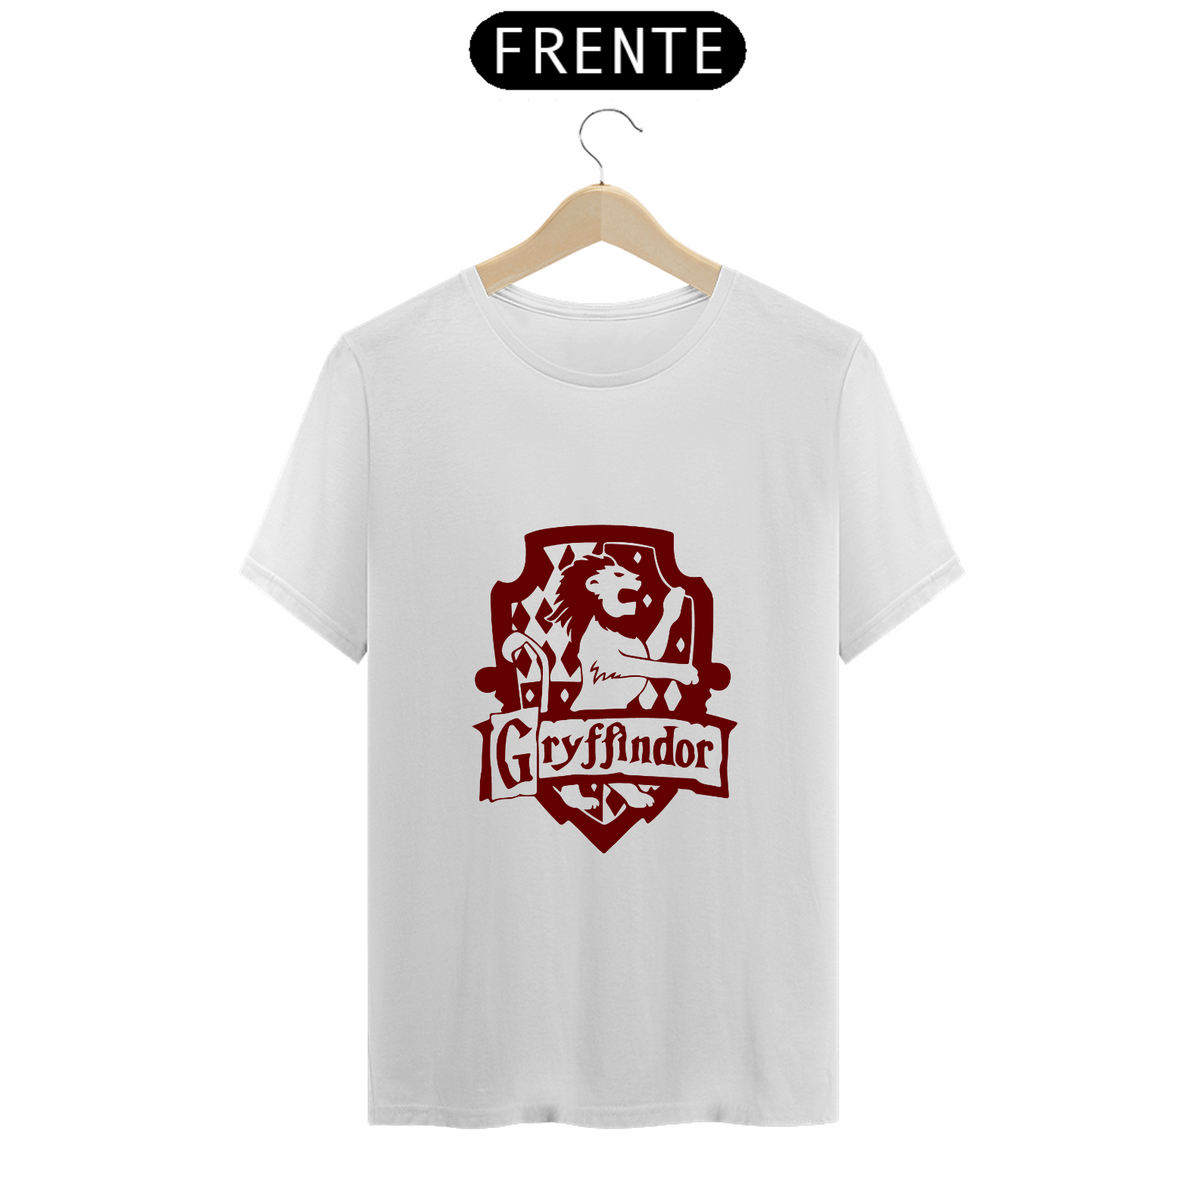 Nome do produto: T-Shirt Prime - Gryffindor